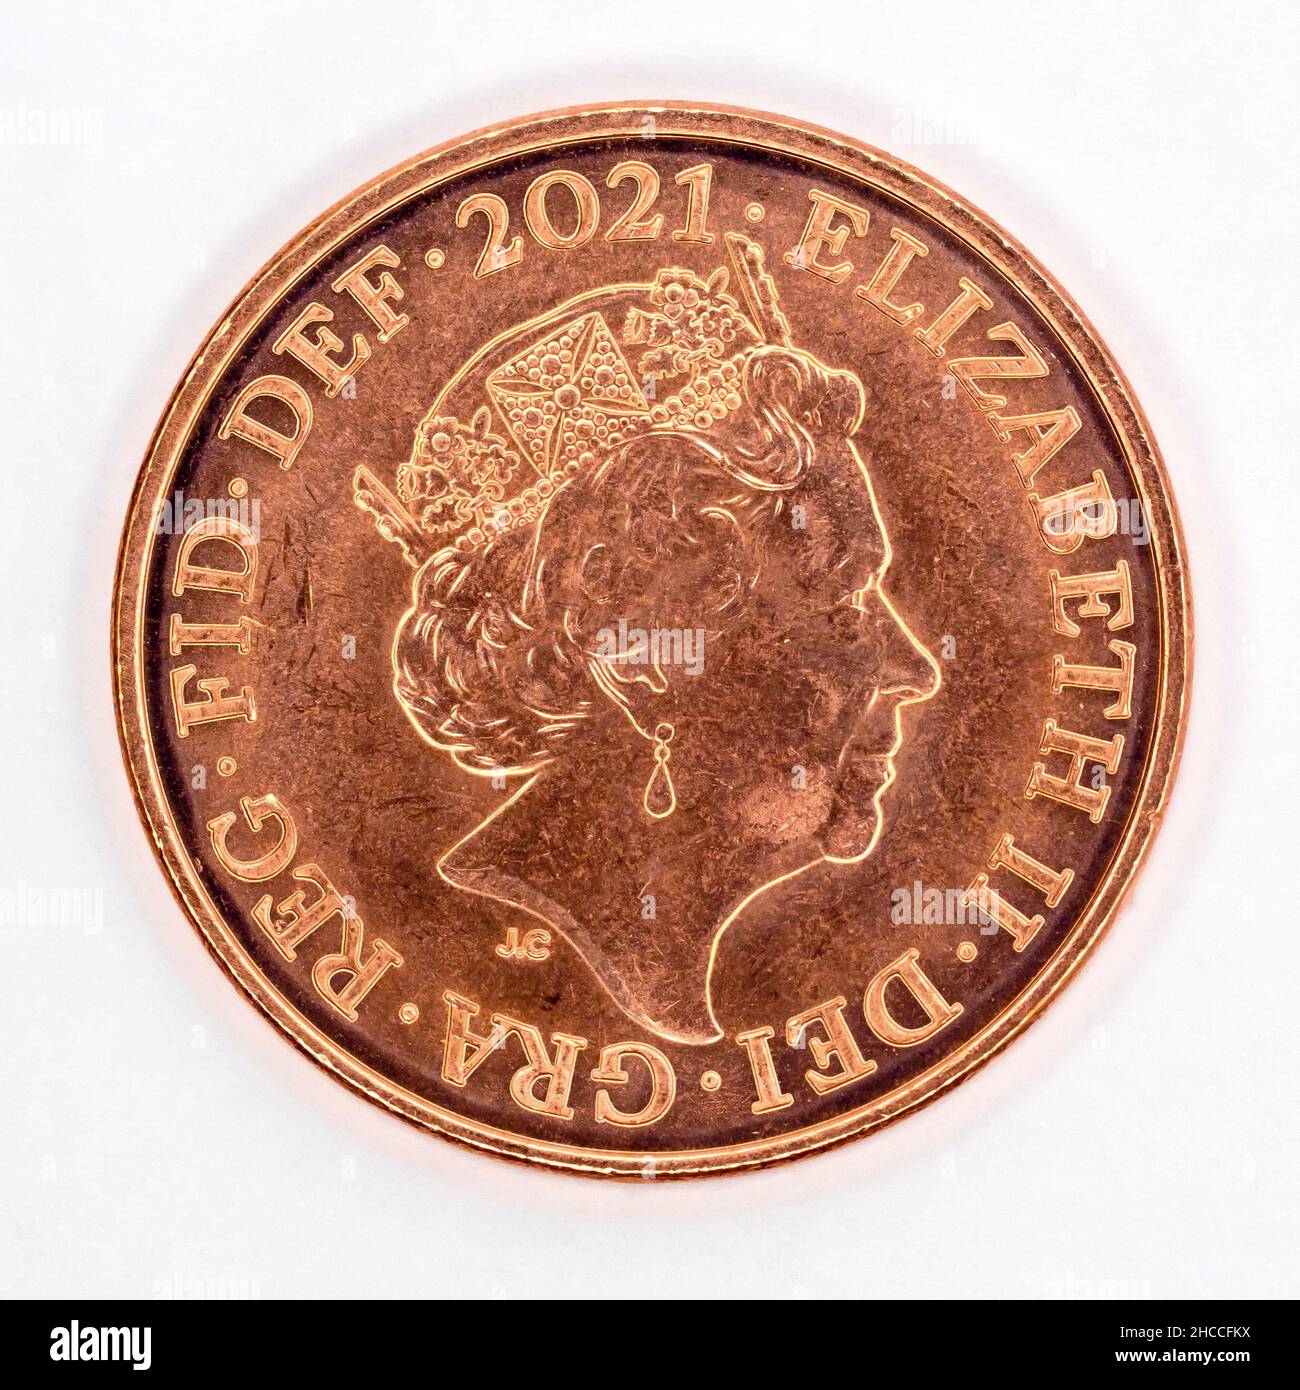 Nahaufnahme eines Stilllebens, das die Kopfseite einer 1 Pence-Münze aus dem Vereinigten Königreich von 2021 auf weißem Hintergrund zeigt. Stockfoto